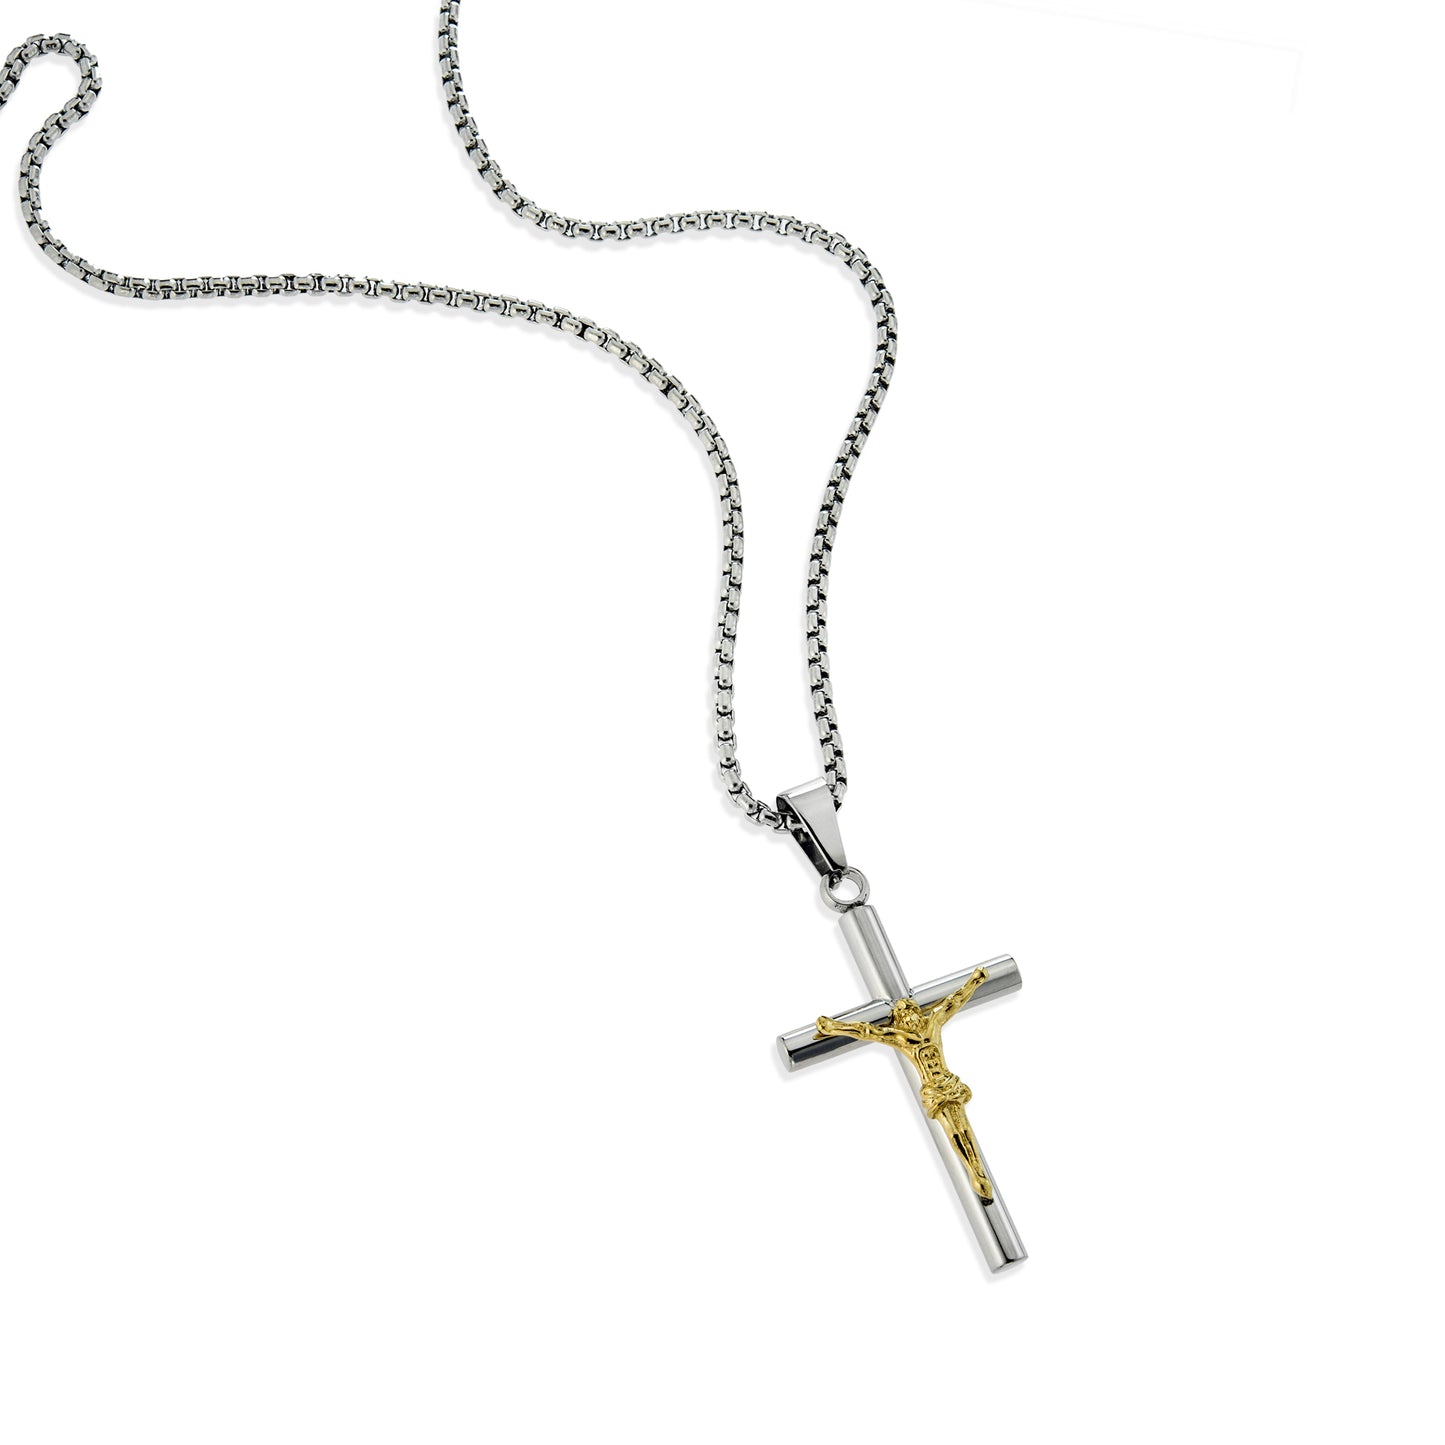 cross necklace-cross jewelry-religious jewelry